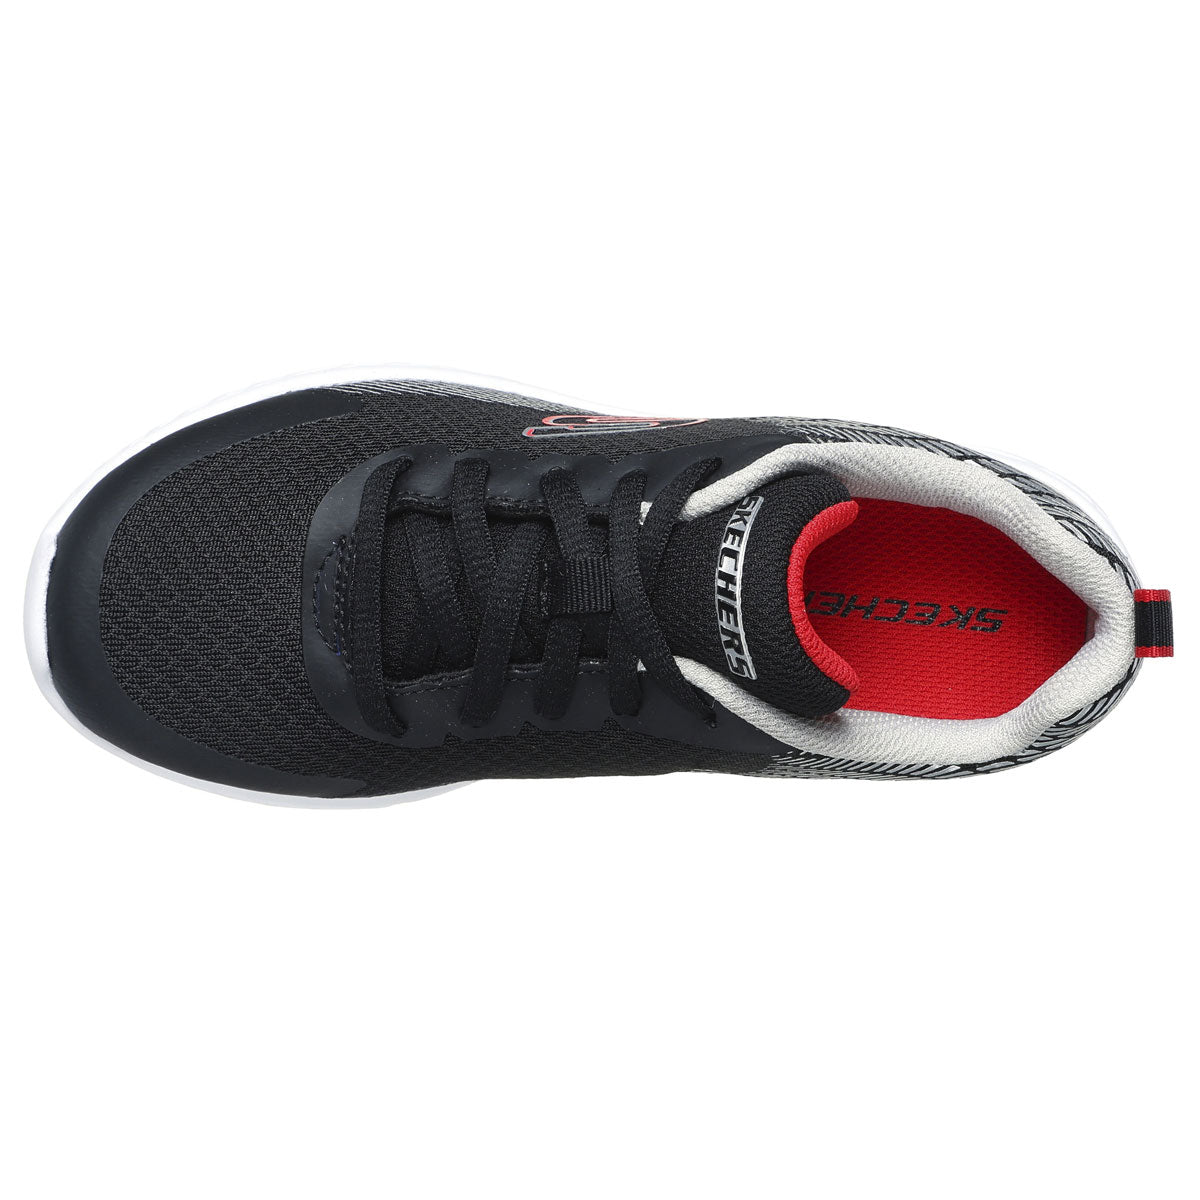 Skechers Microspec II Shoes - Boys - Black/Silver/Red